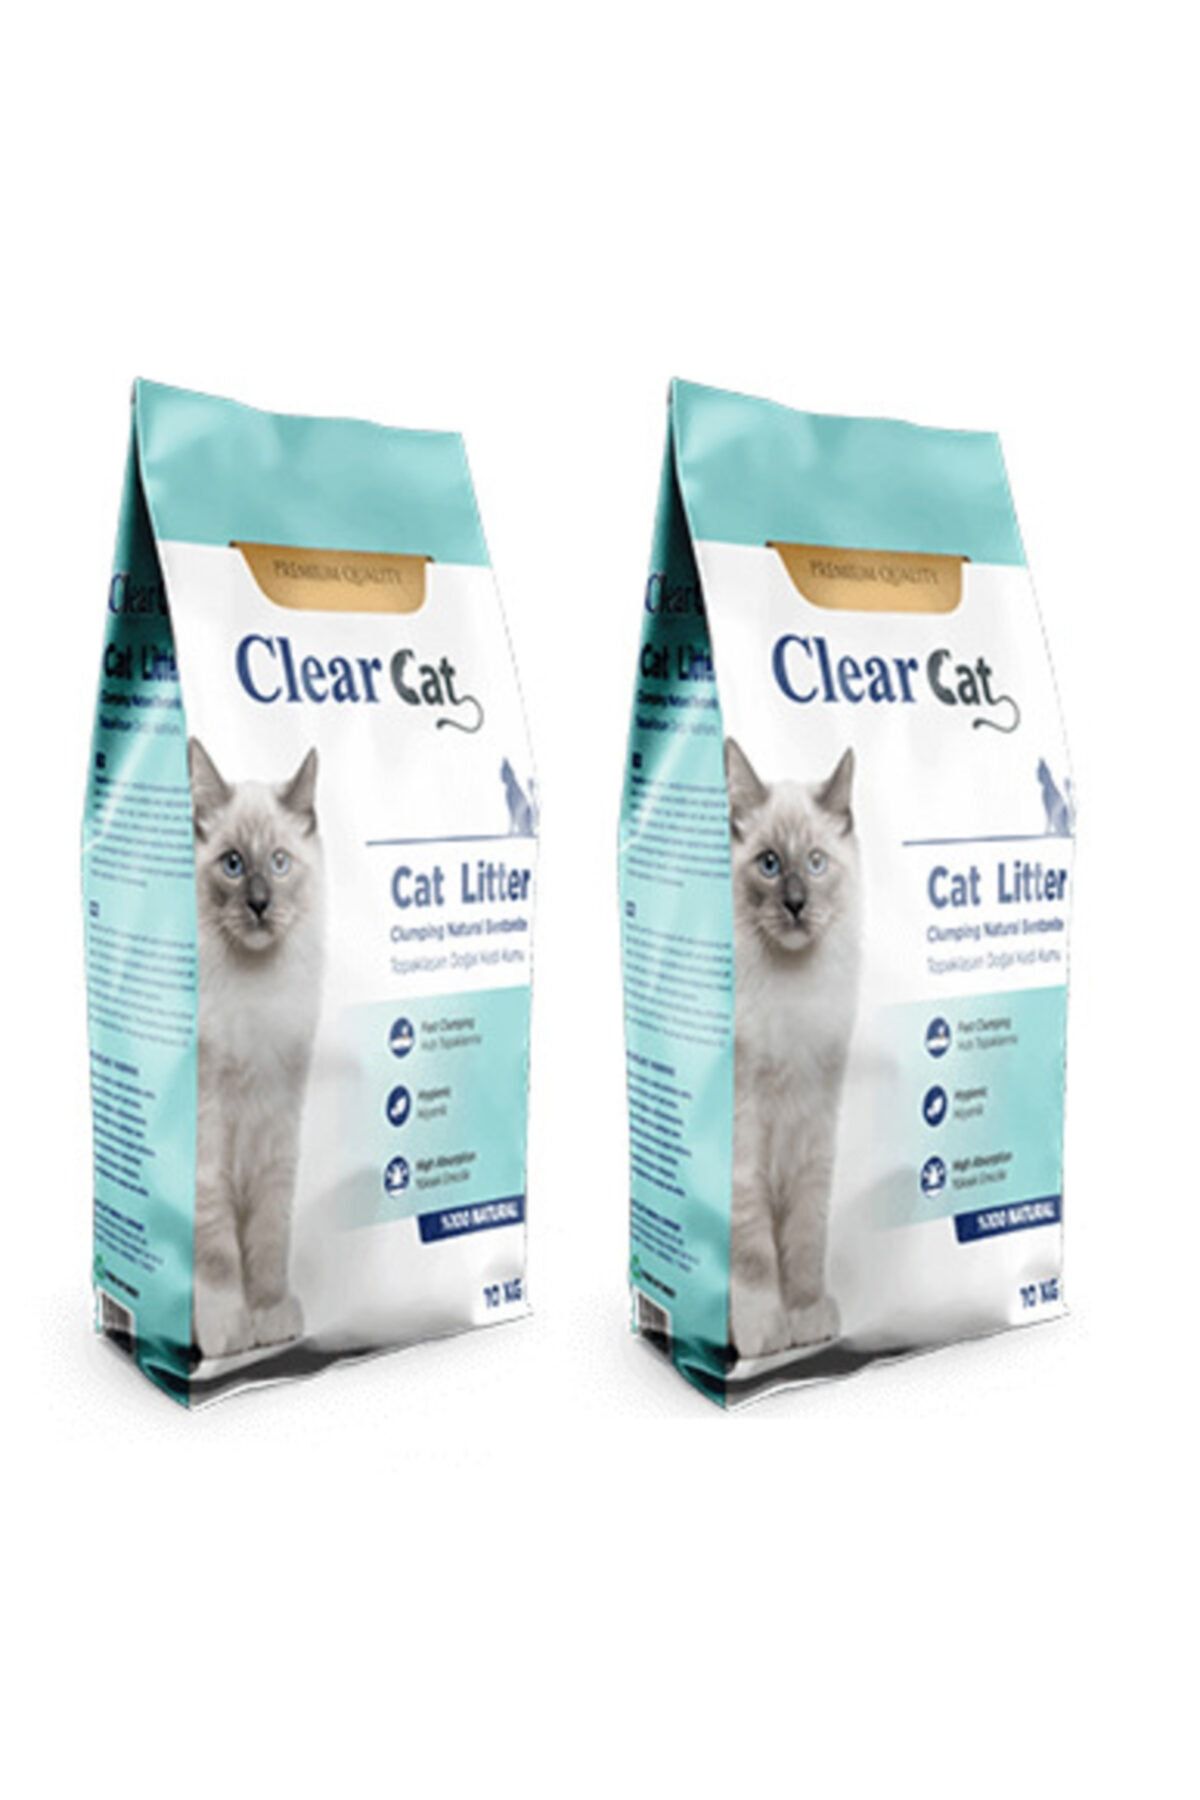 Проплан лайф клеар для кошек. Clear Cat. Наполнитель Clear Cat турецкий. @Дистроидер:/Clear Cat. /E Clear Cat.